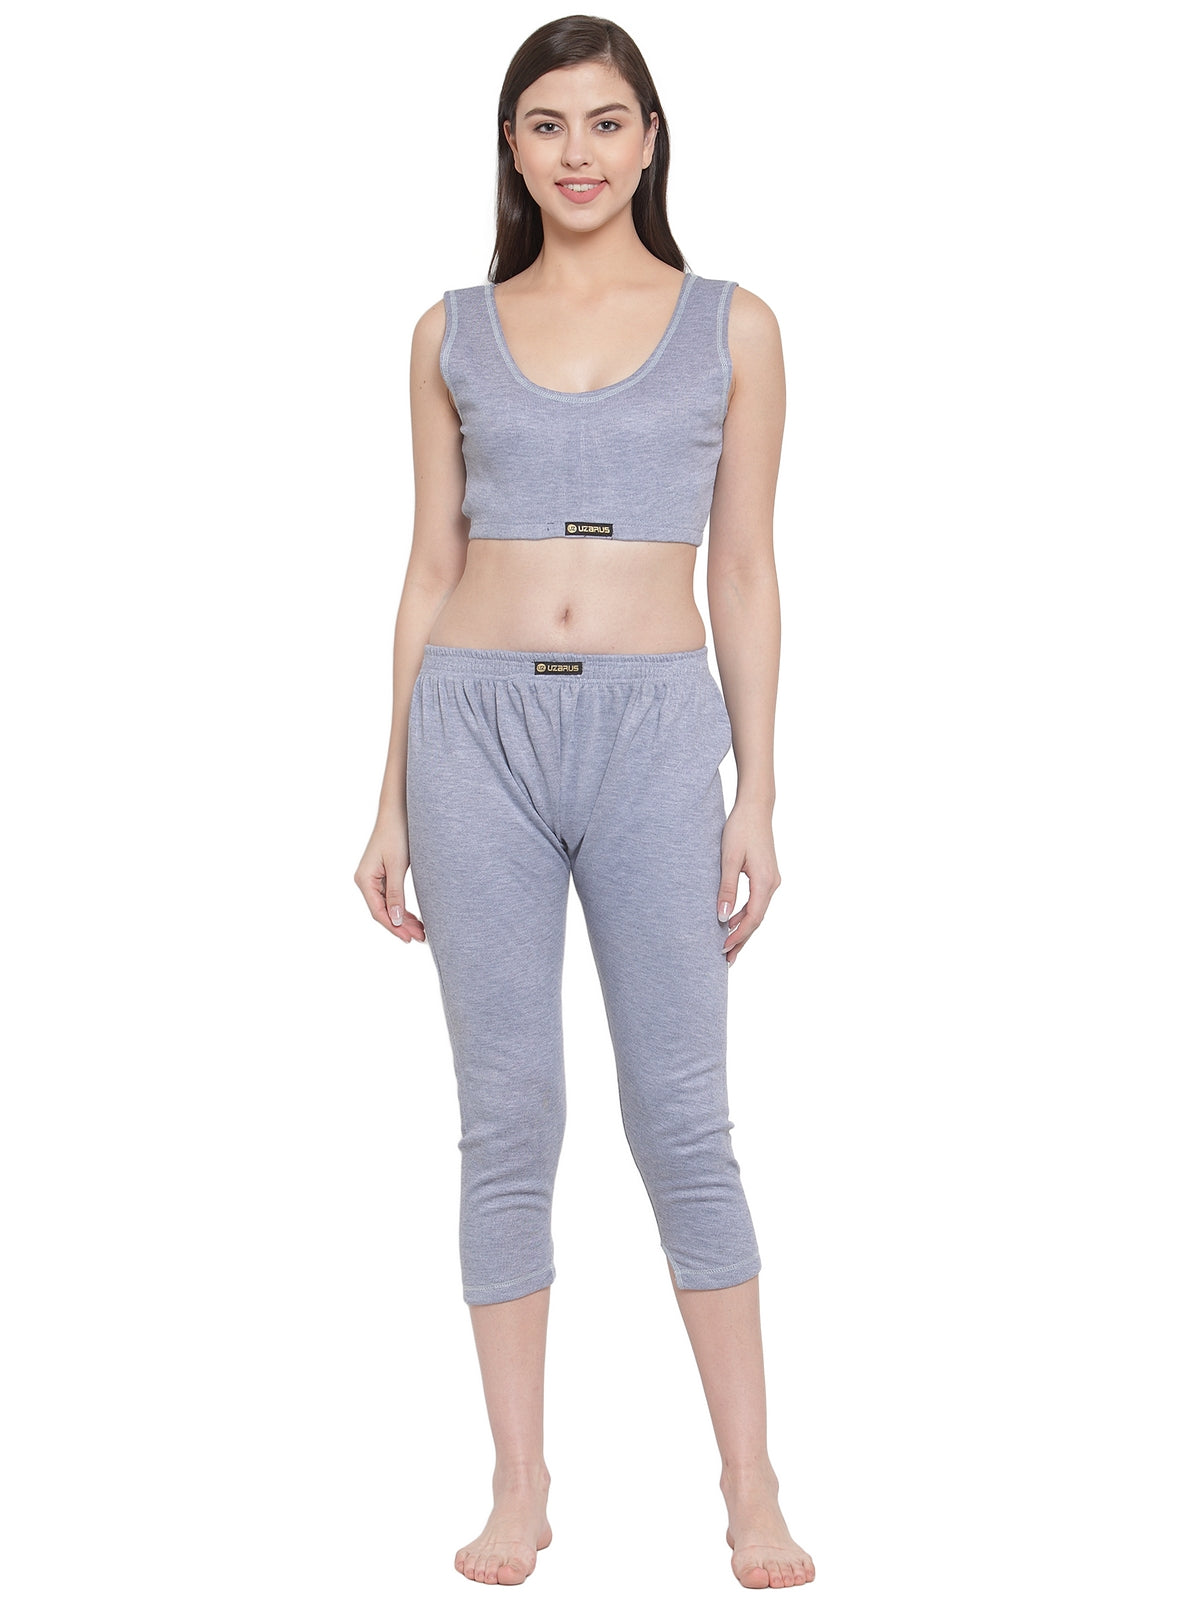 W03 Ladies Winter Thermal Inner Wear Shirt + Pants (Grey)